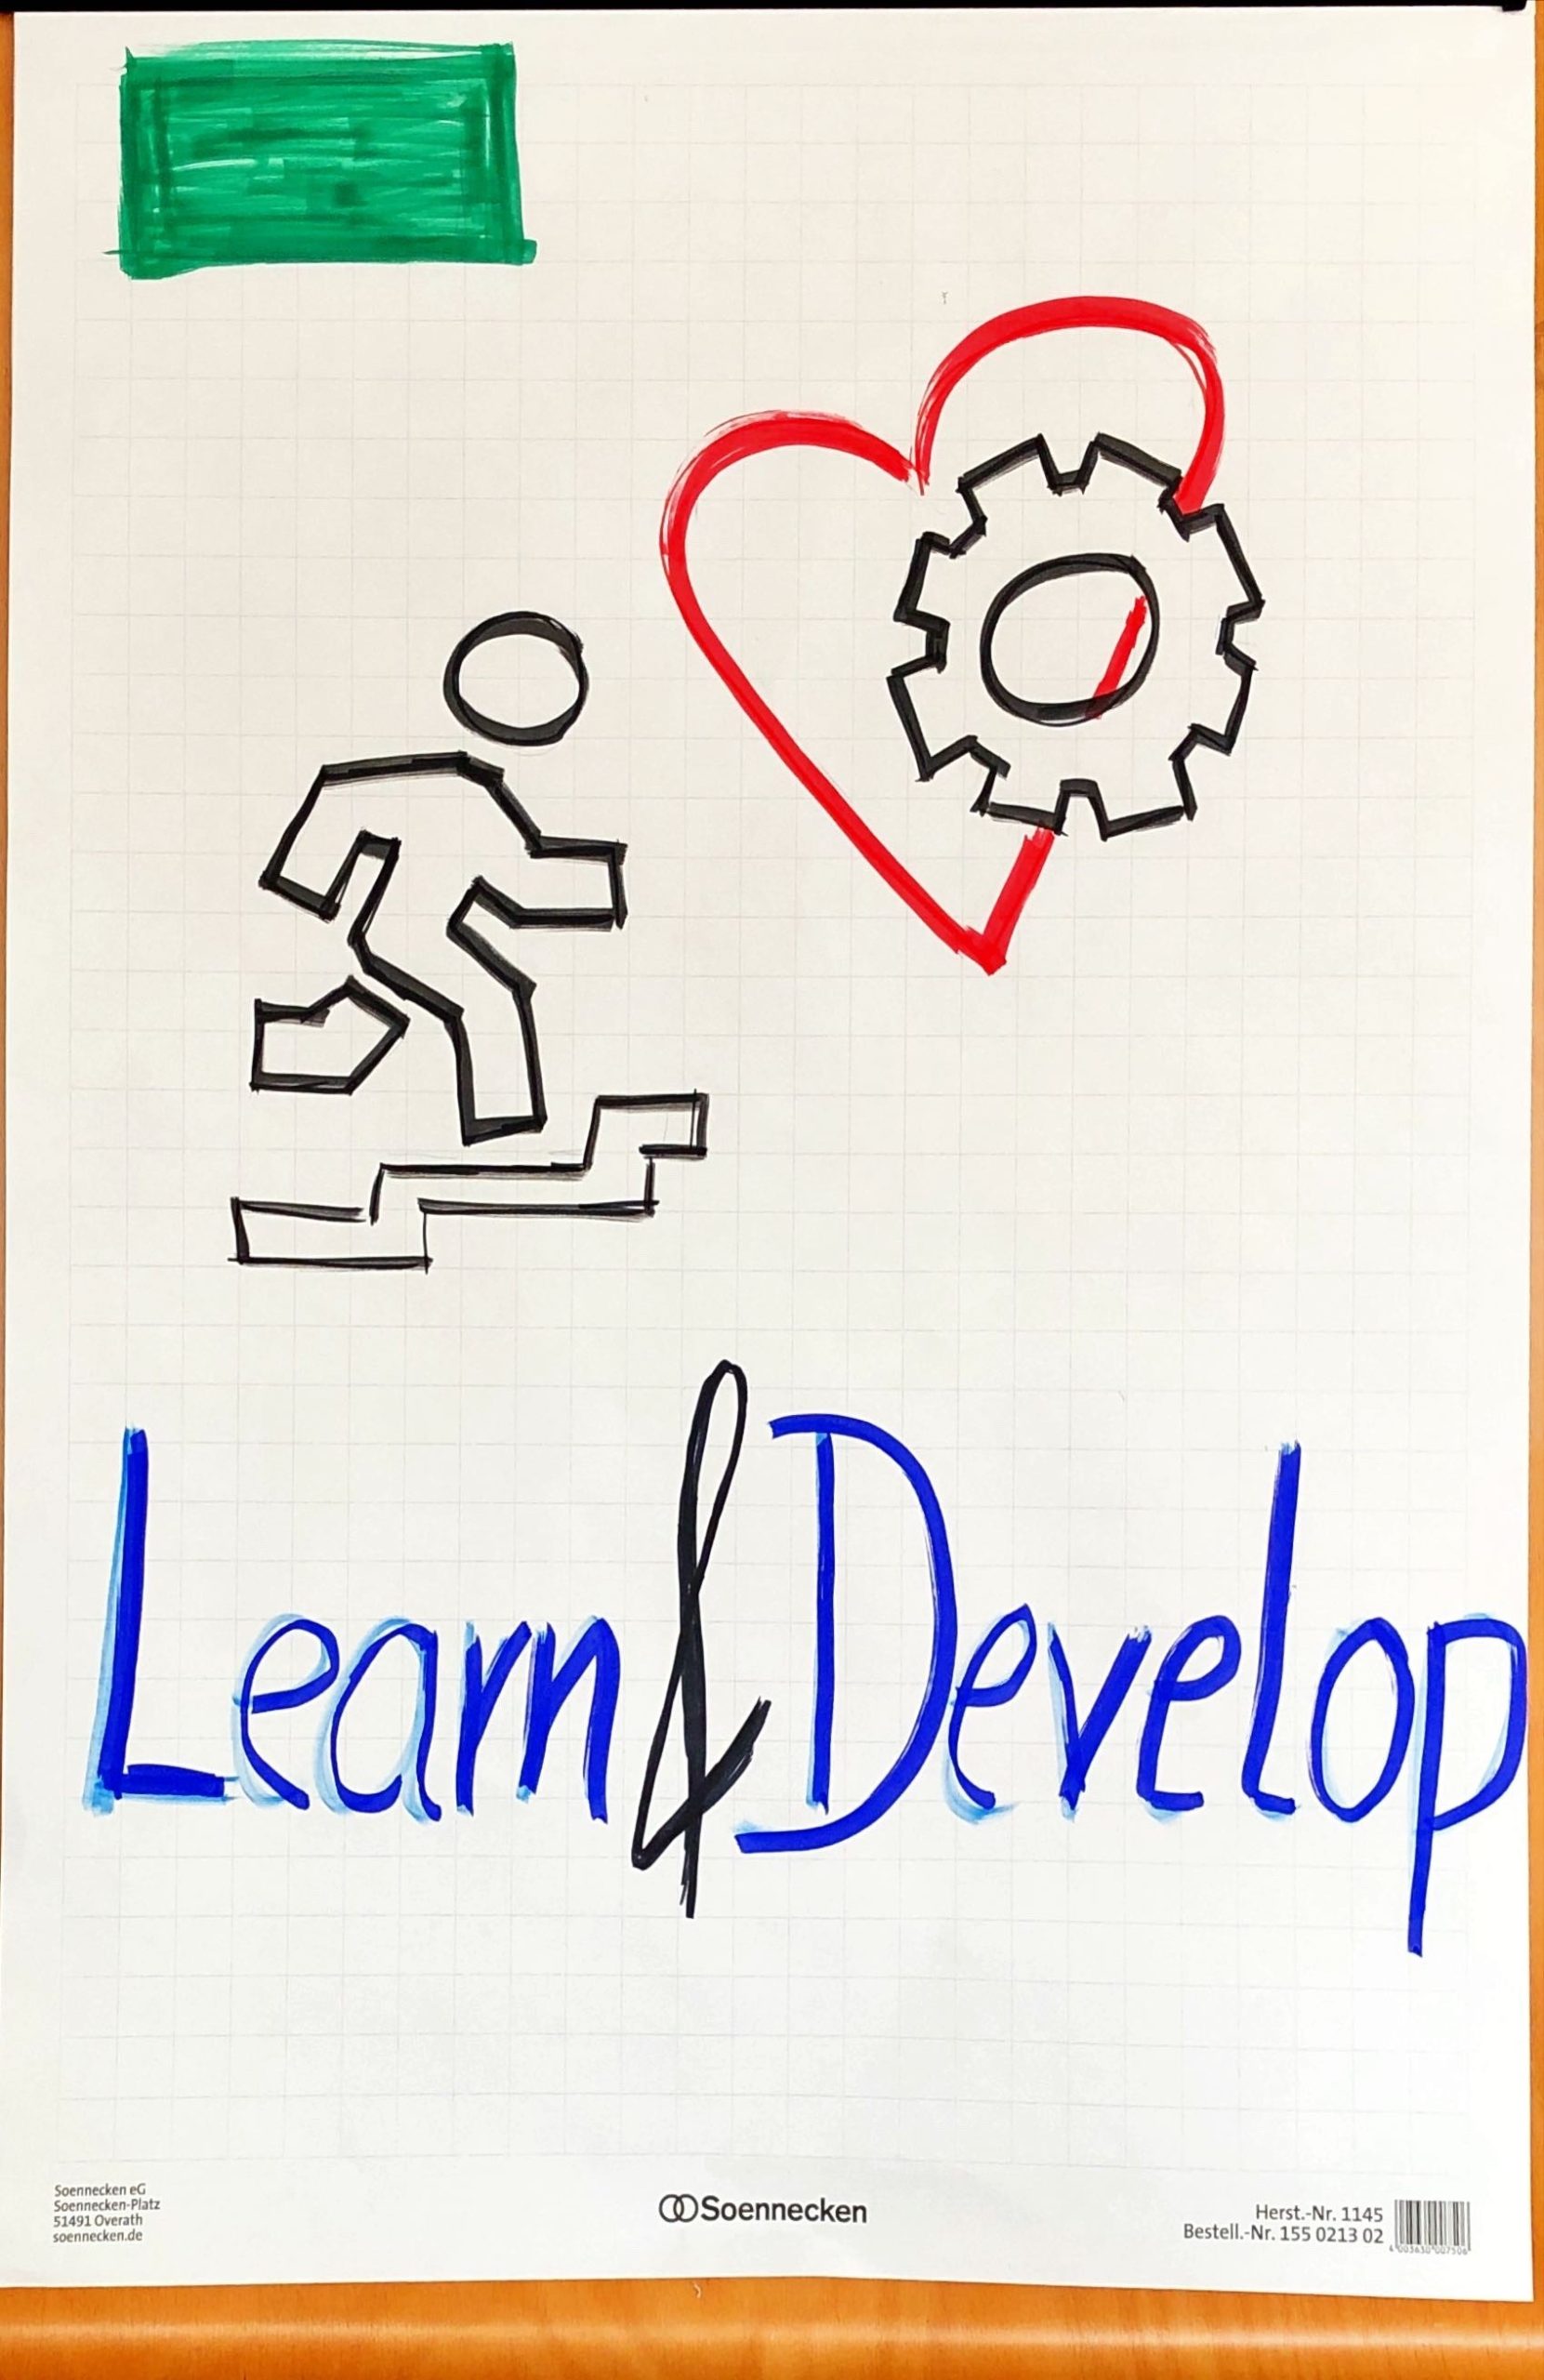 Plakat auf welchem "Learn & Develop" steht